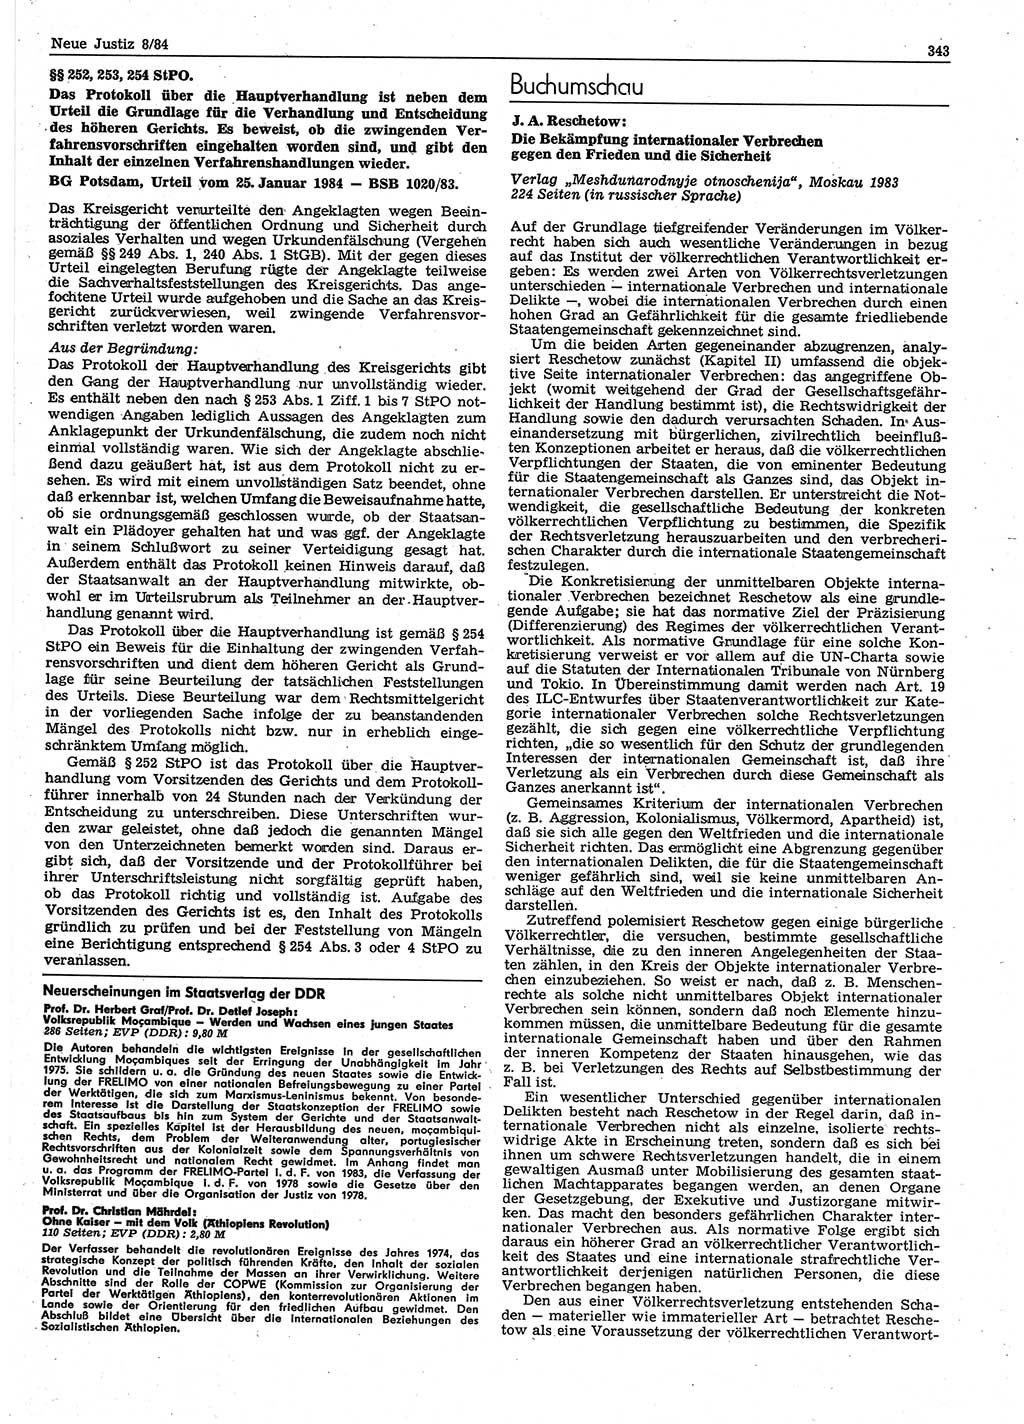 Neue Justiz (NJ), Zeitschrift für sozialistisches Recht und Gesetzlichkeit [Deutsche Demokratische Republik (DDR)], 38. Jahrgang 1984, Seite 343 (NJ DDR 1984, S. 343)